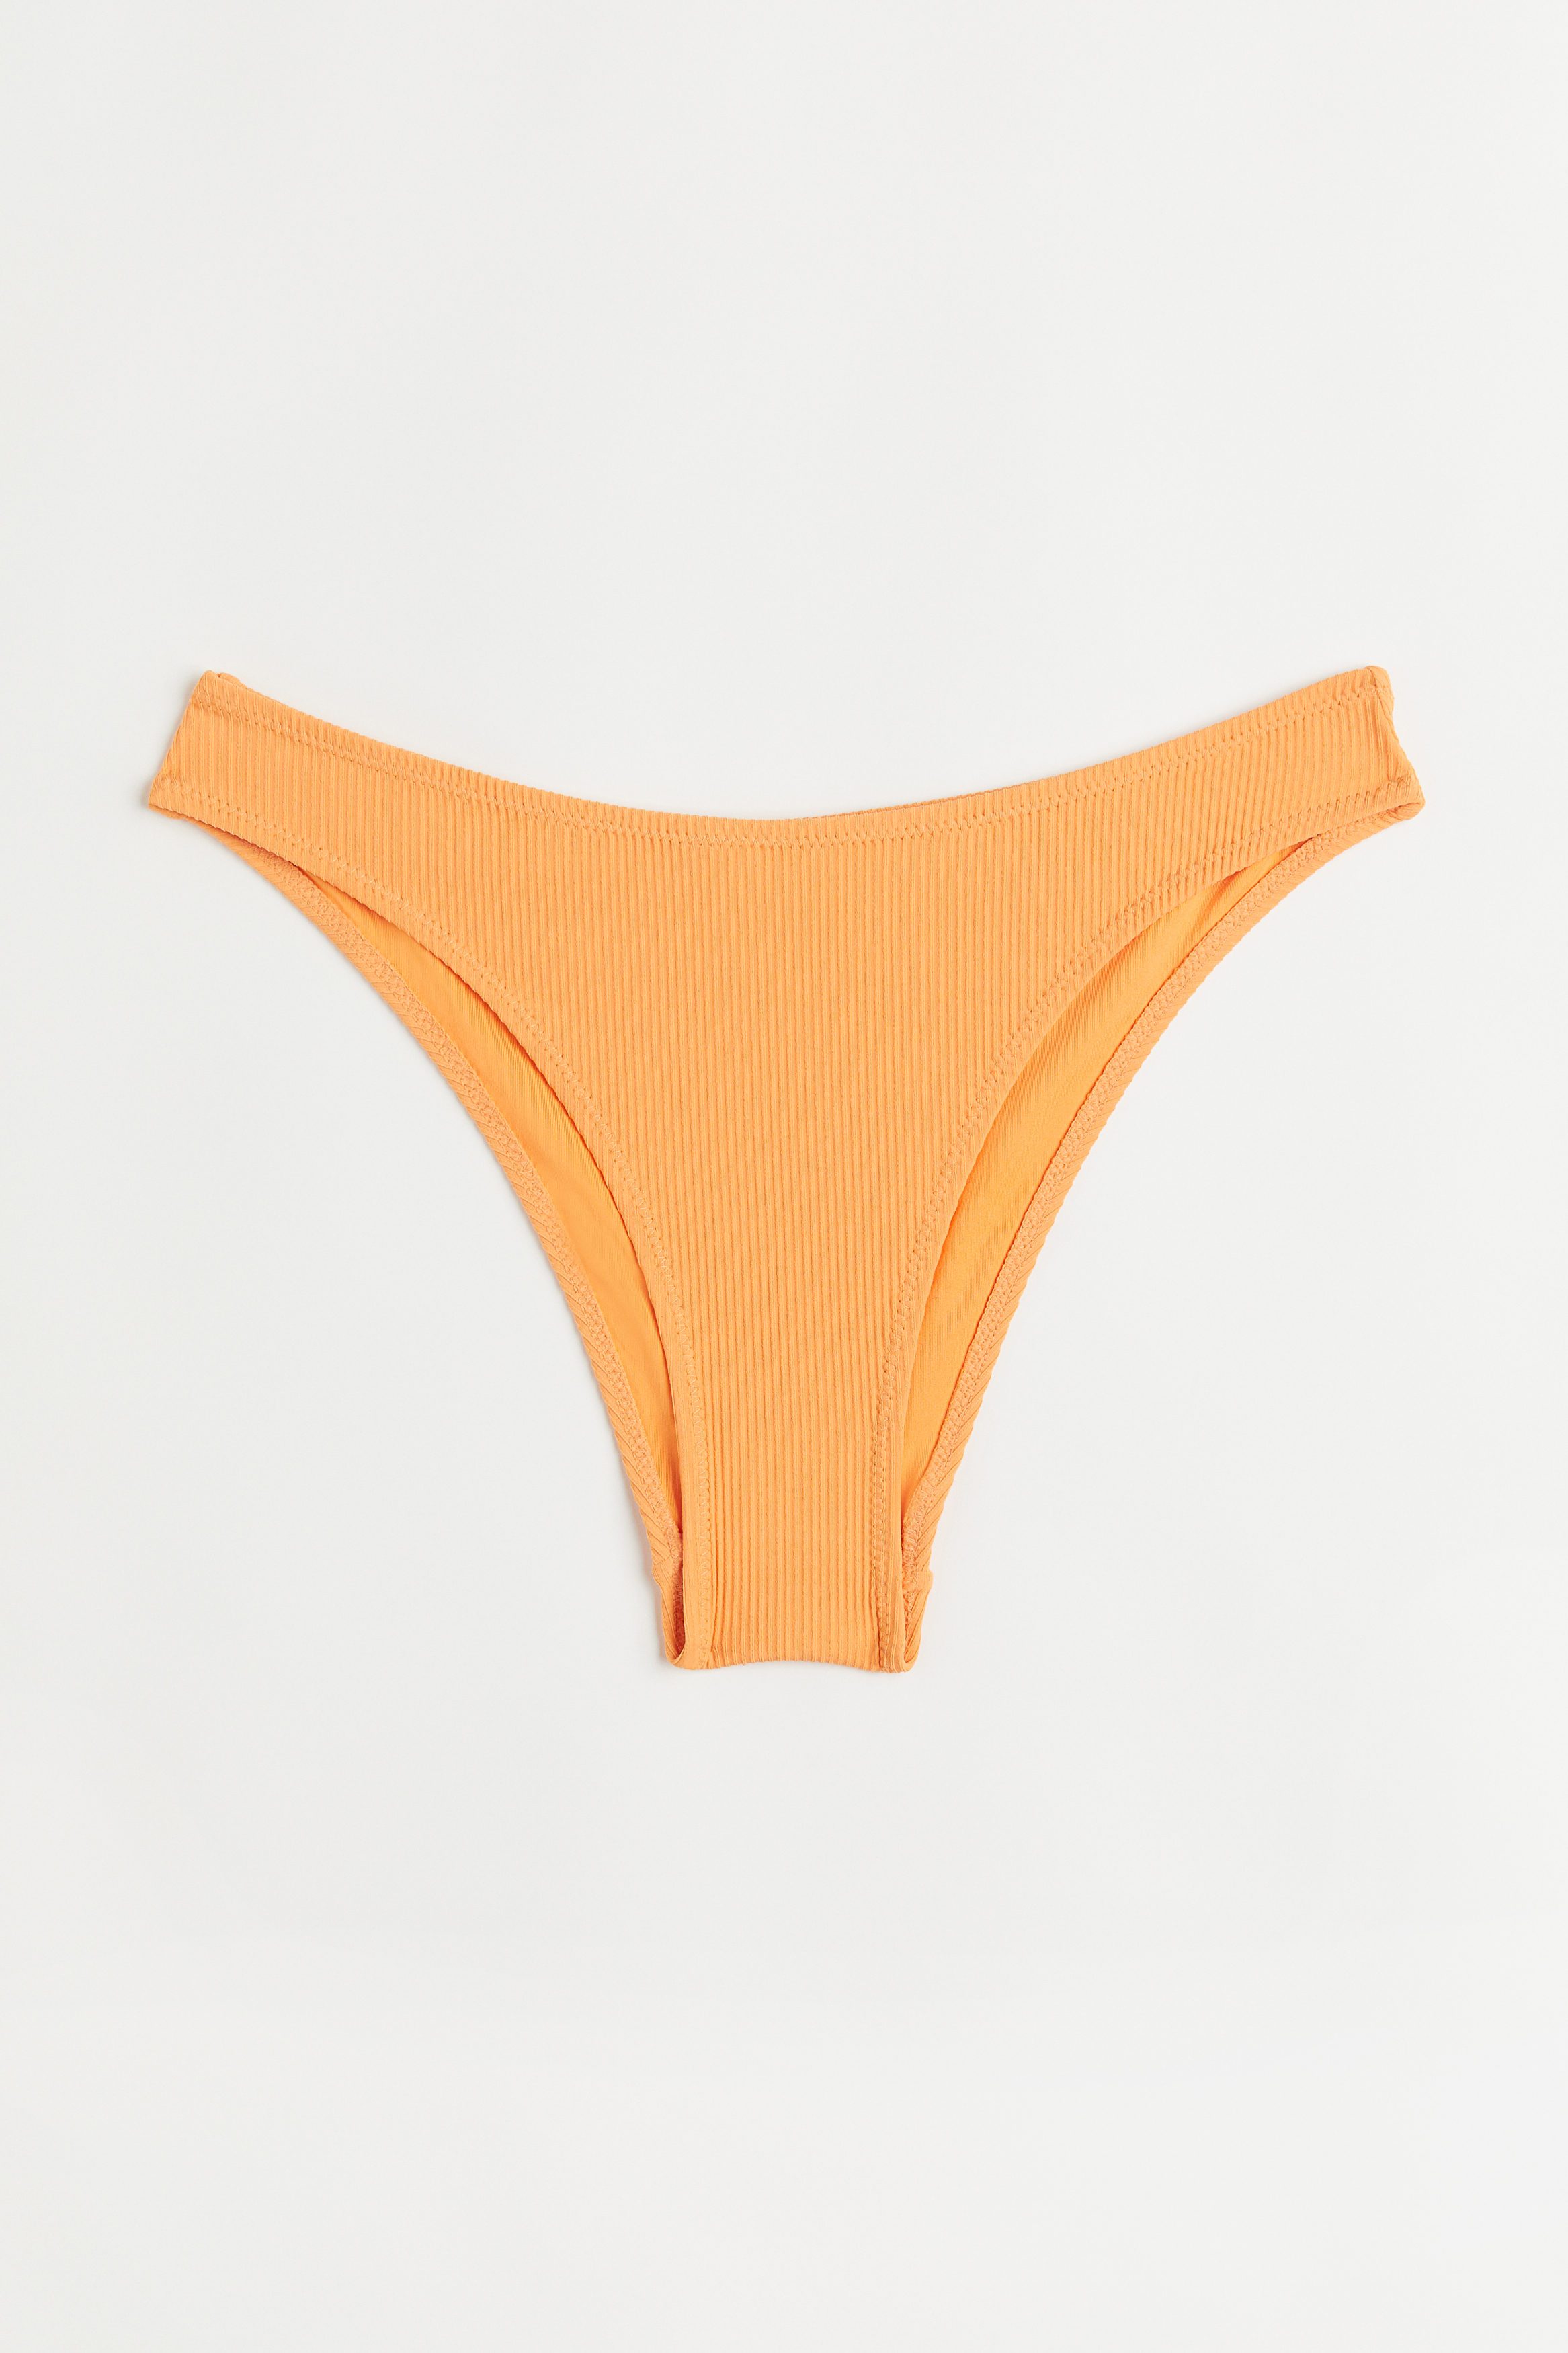 Billede af H&M Bikinibriefs Orange, Bikini Underdele I størrelse 50